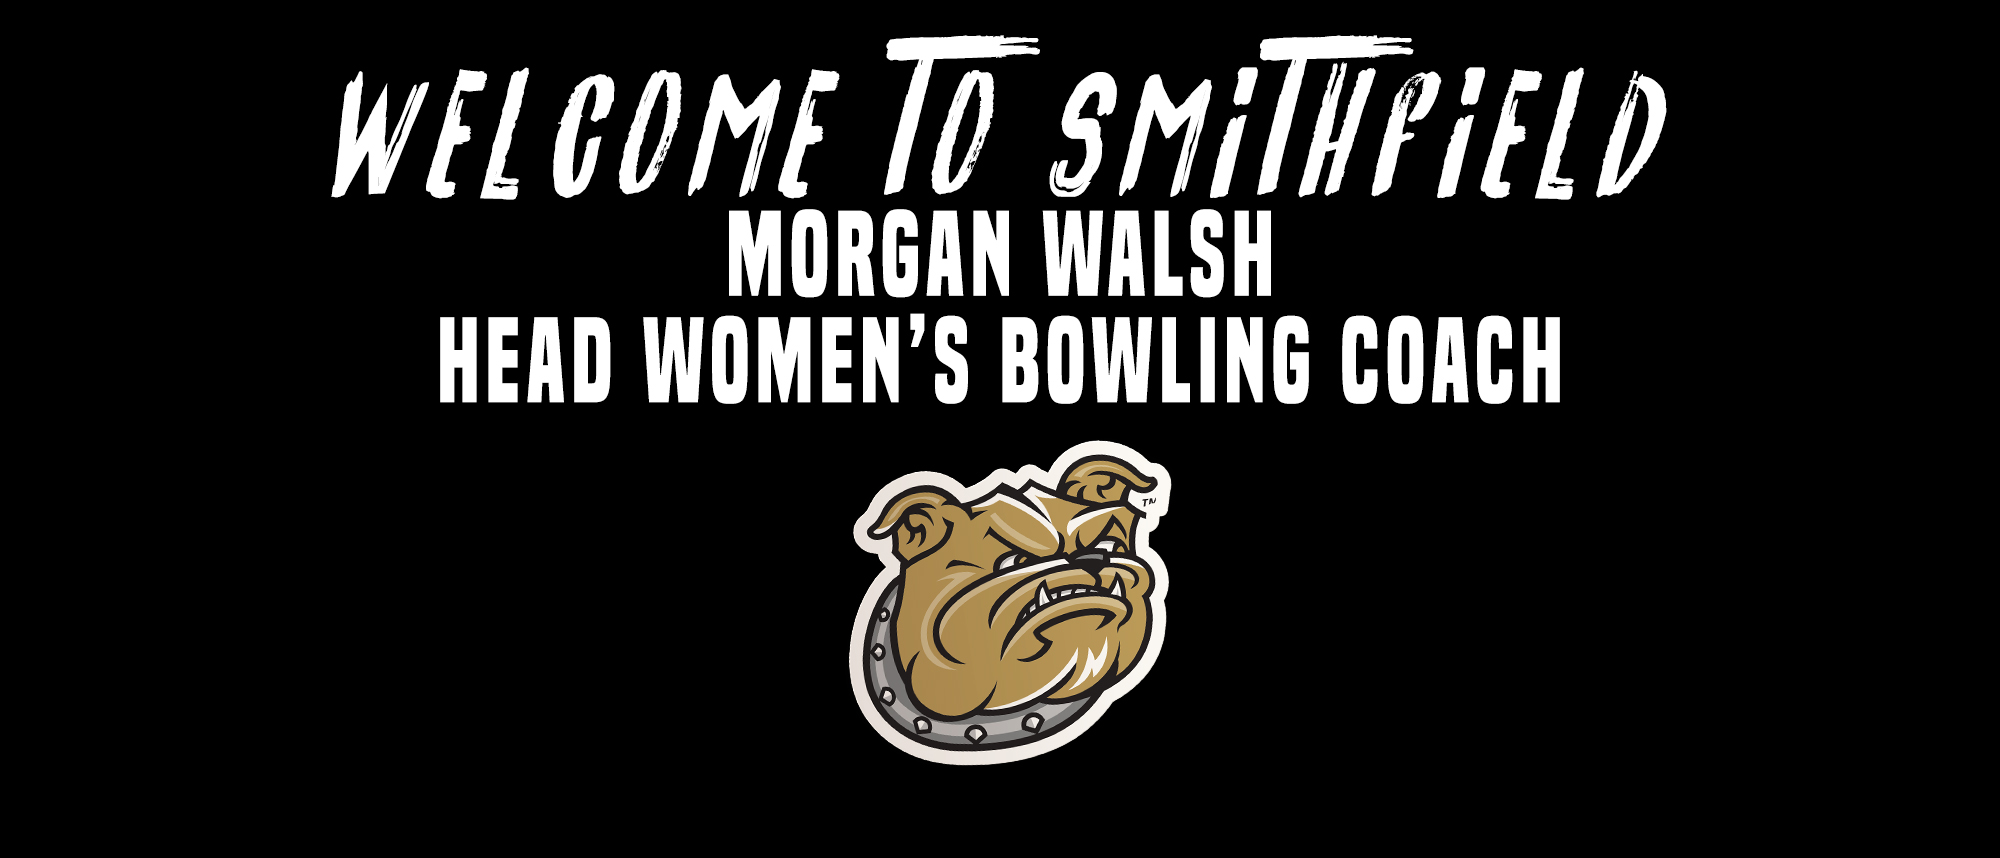 Walsh named women's bowling head coach